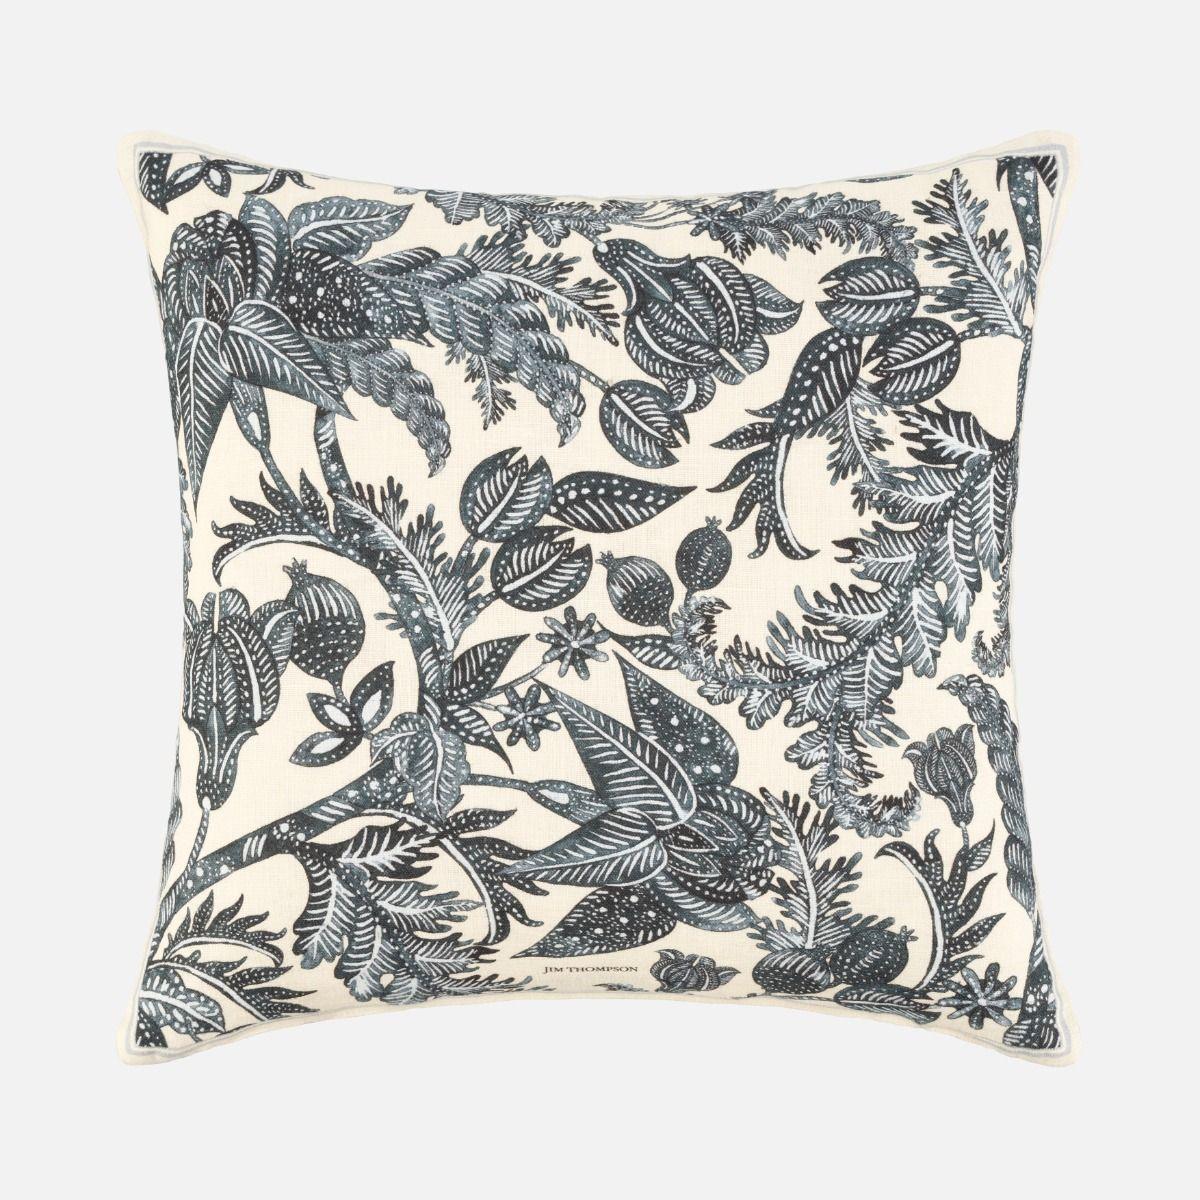 Floral Batik Linen Cushion Cover 18" - Black